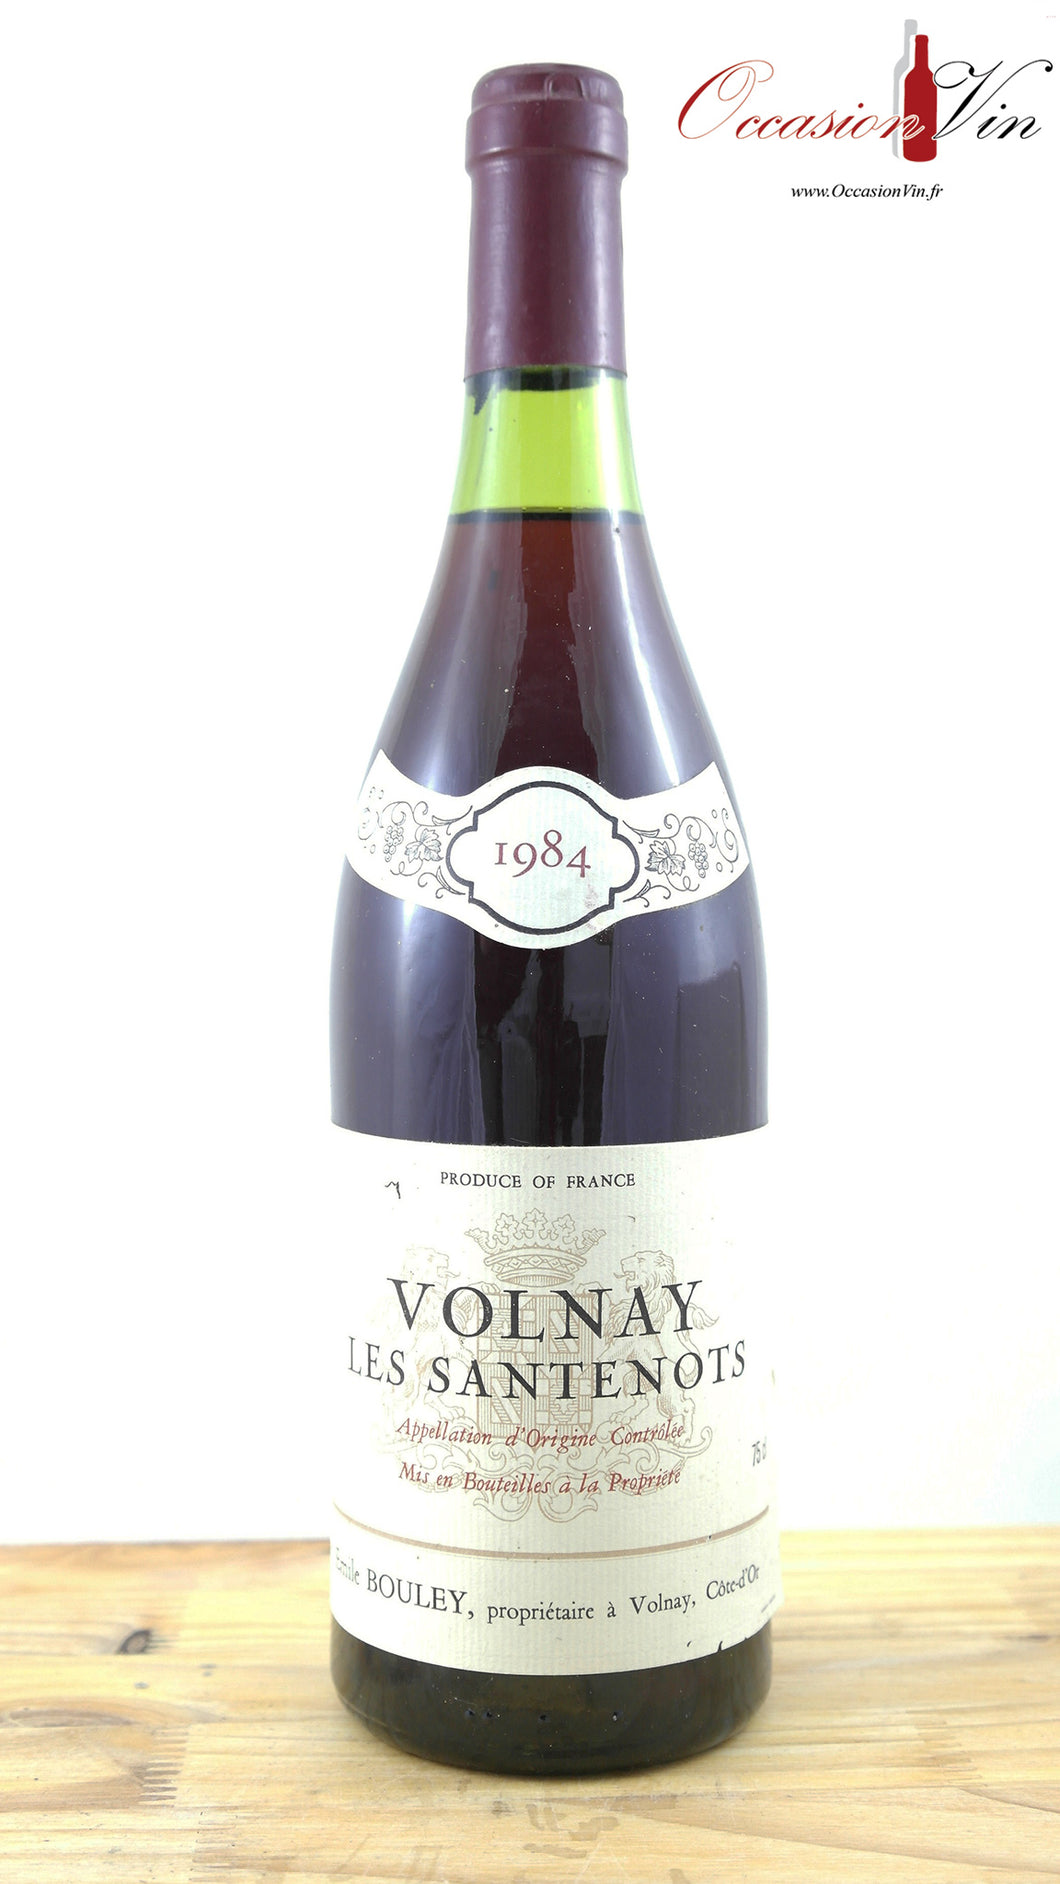 Volnay Les Santenots Vin 1984